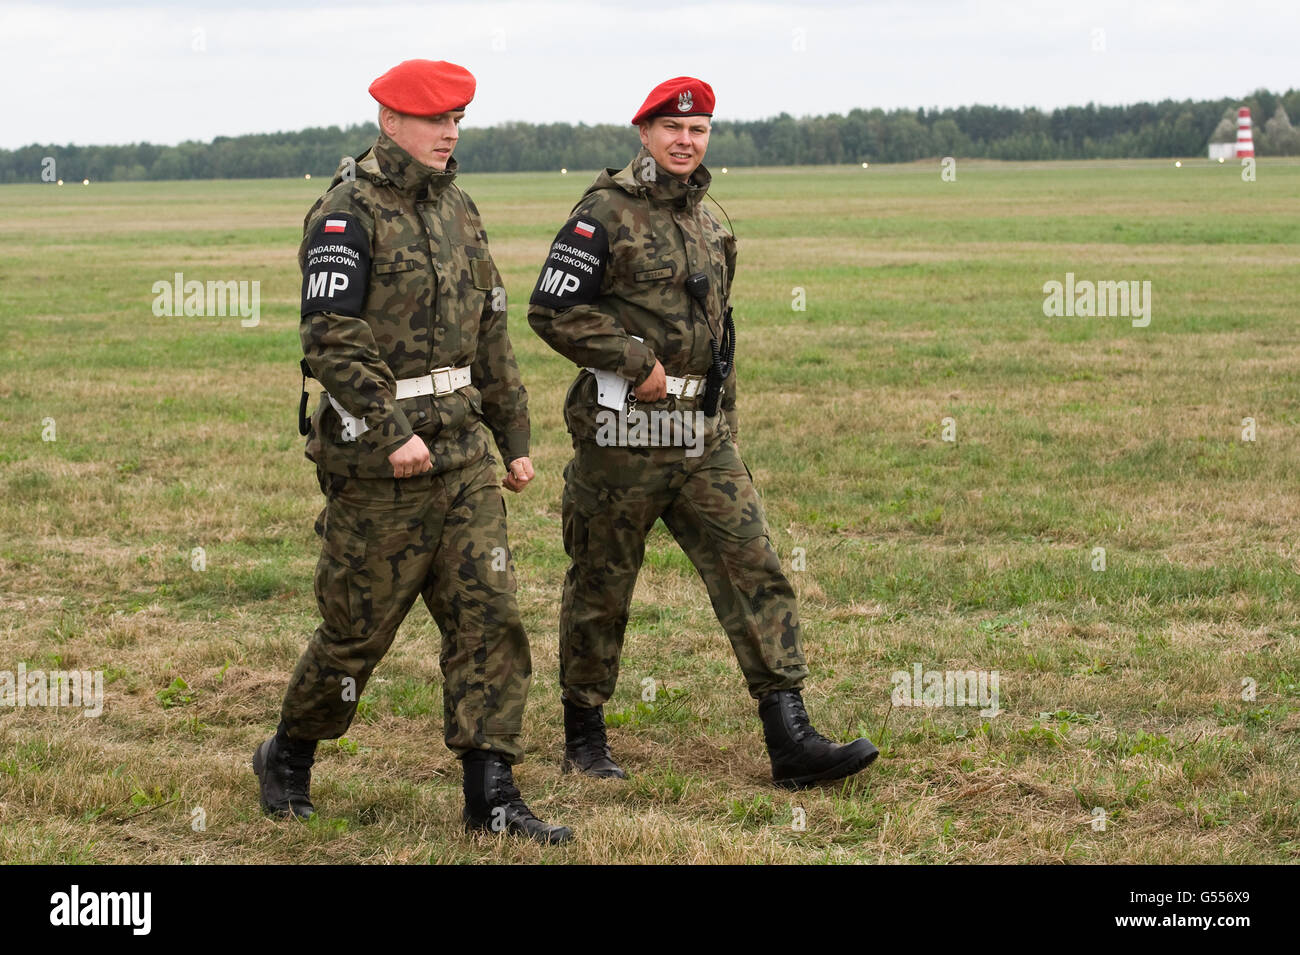 Lask, Polonia. 26 de septiembre de 2015. Dos soldados de la policía militar polaco ilustra a la 32ª Base Aérea en Lask, Polonia. ©Marcin Ro Foto de stock